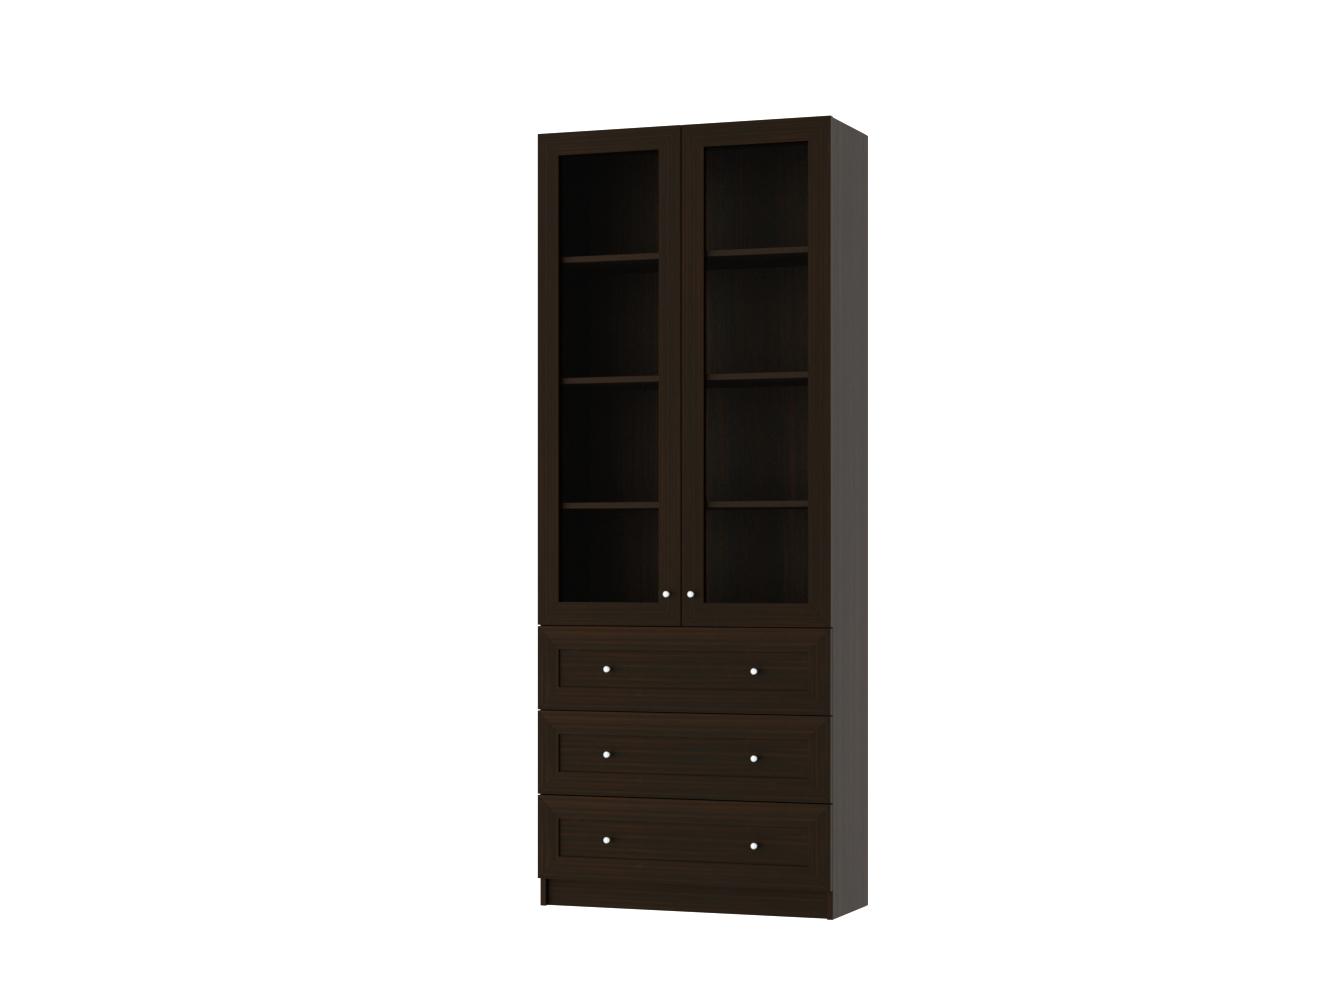  Книжный шкаф Билли 355 brown ИКЕА (IKEA) изображение товара